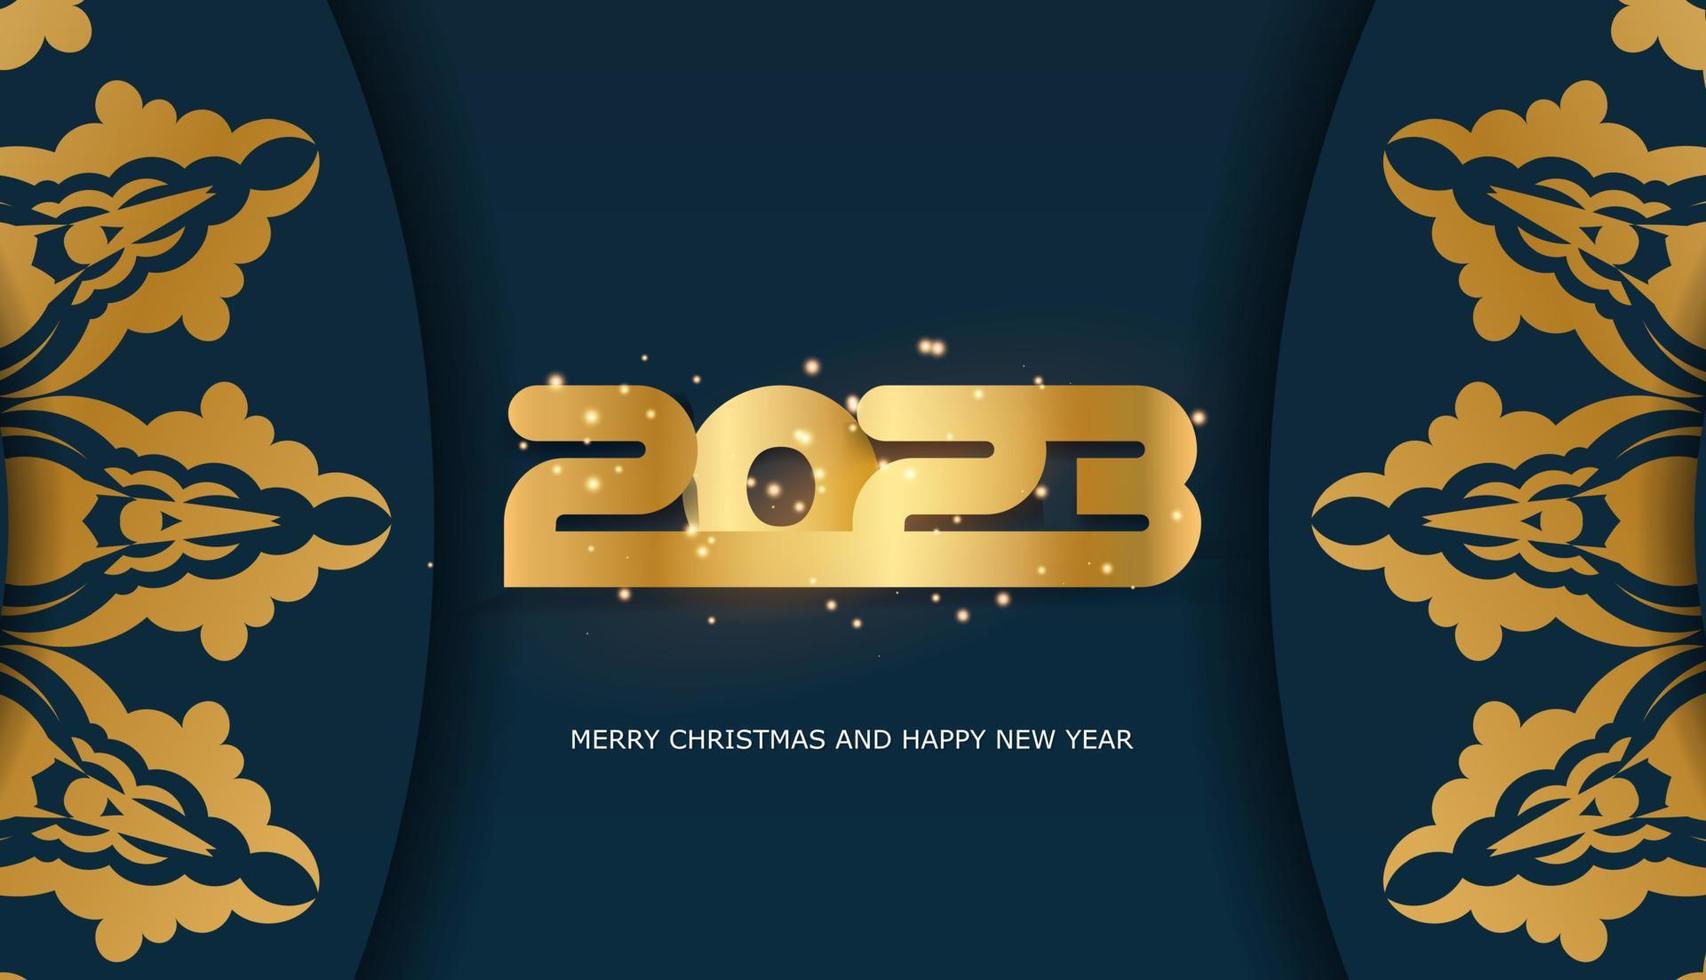 2023 Frohes neues Jahr festliche Grußkarte. blaue und goldene Farbe. vektor